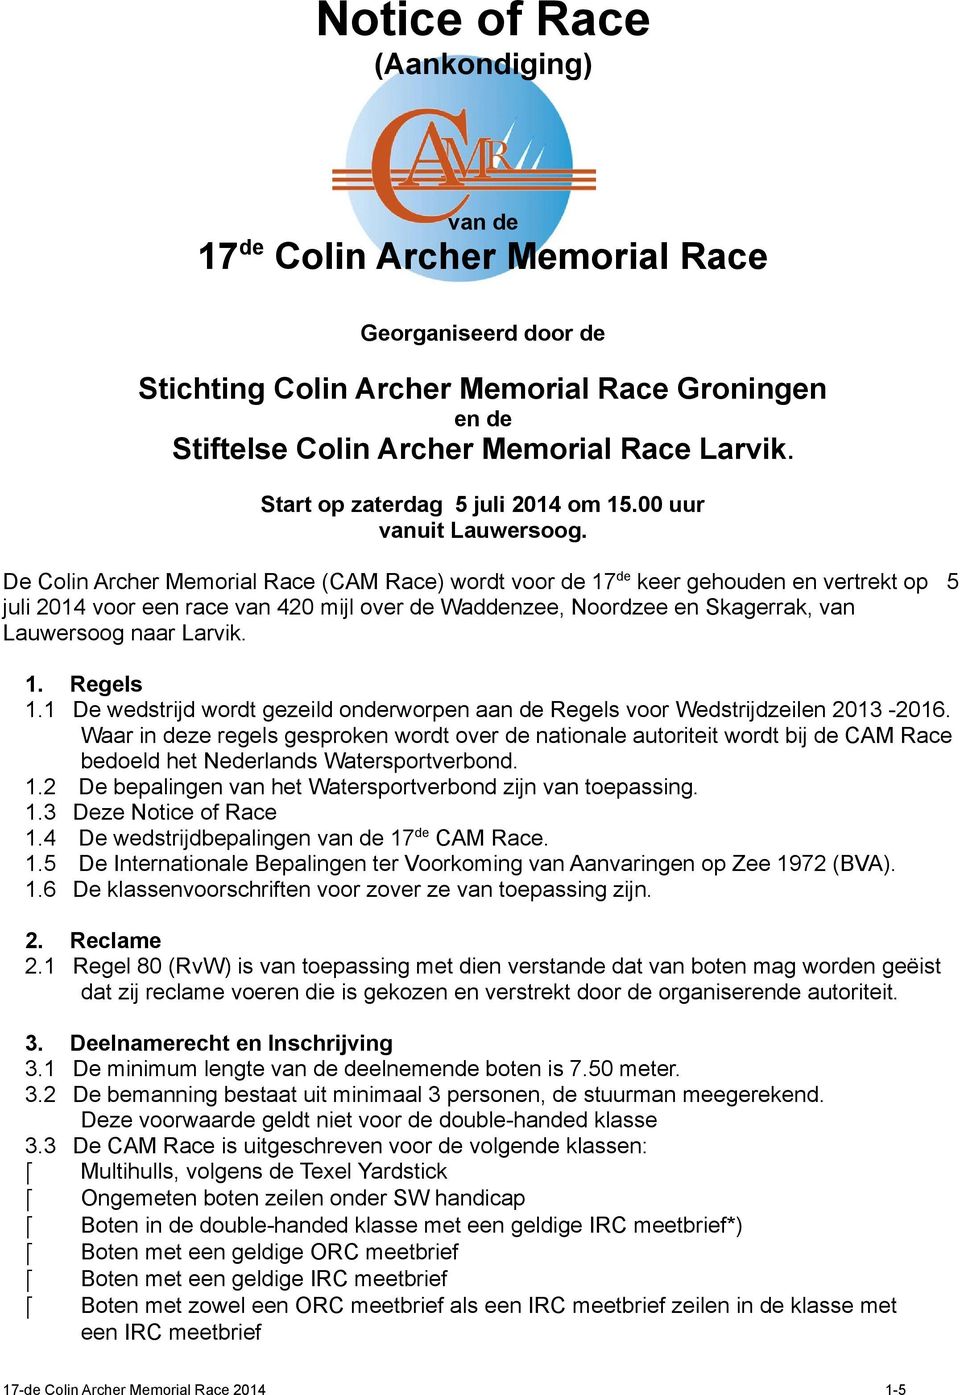 De Colin Archer Memorial Race (CAM Race) wordt voor de 17 de keer gehouden en vertrekt op 5 juli 2014 voor een race van 420 mijl over de Waddenzee, Noordzee en Skagerrak, van Lauwersoog naar Larvik.